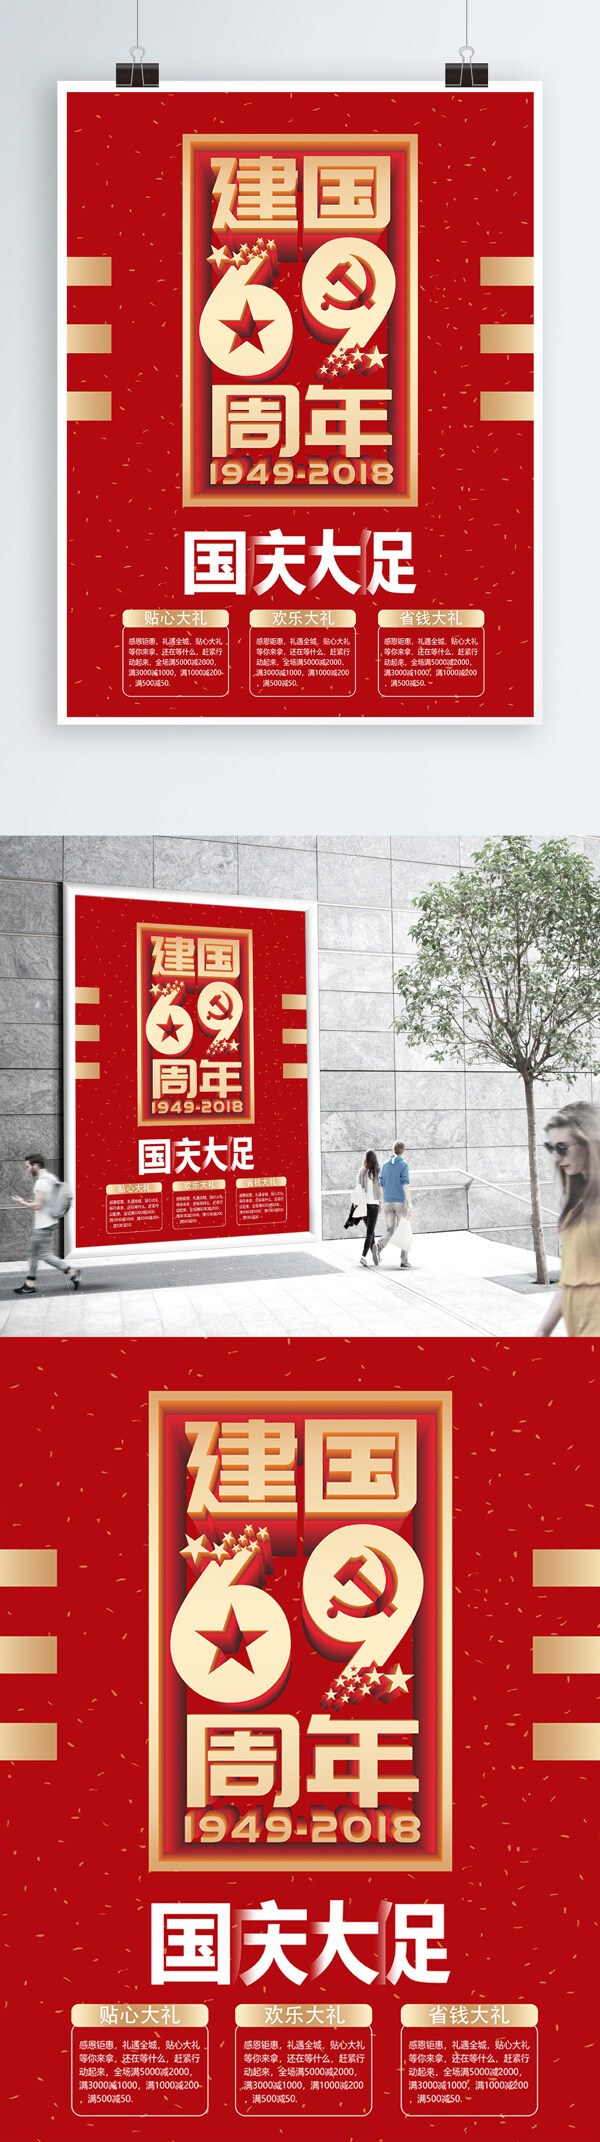 简约大气红色庆国庆促销海报设计